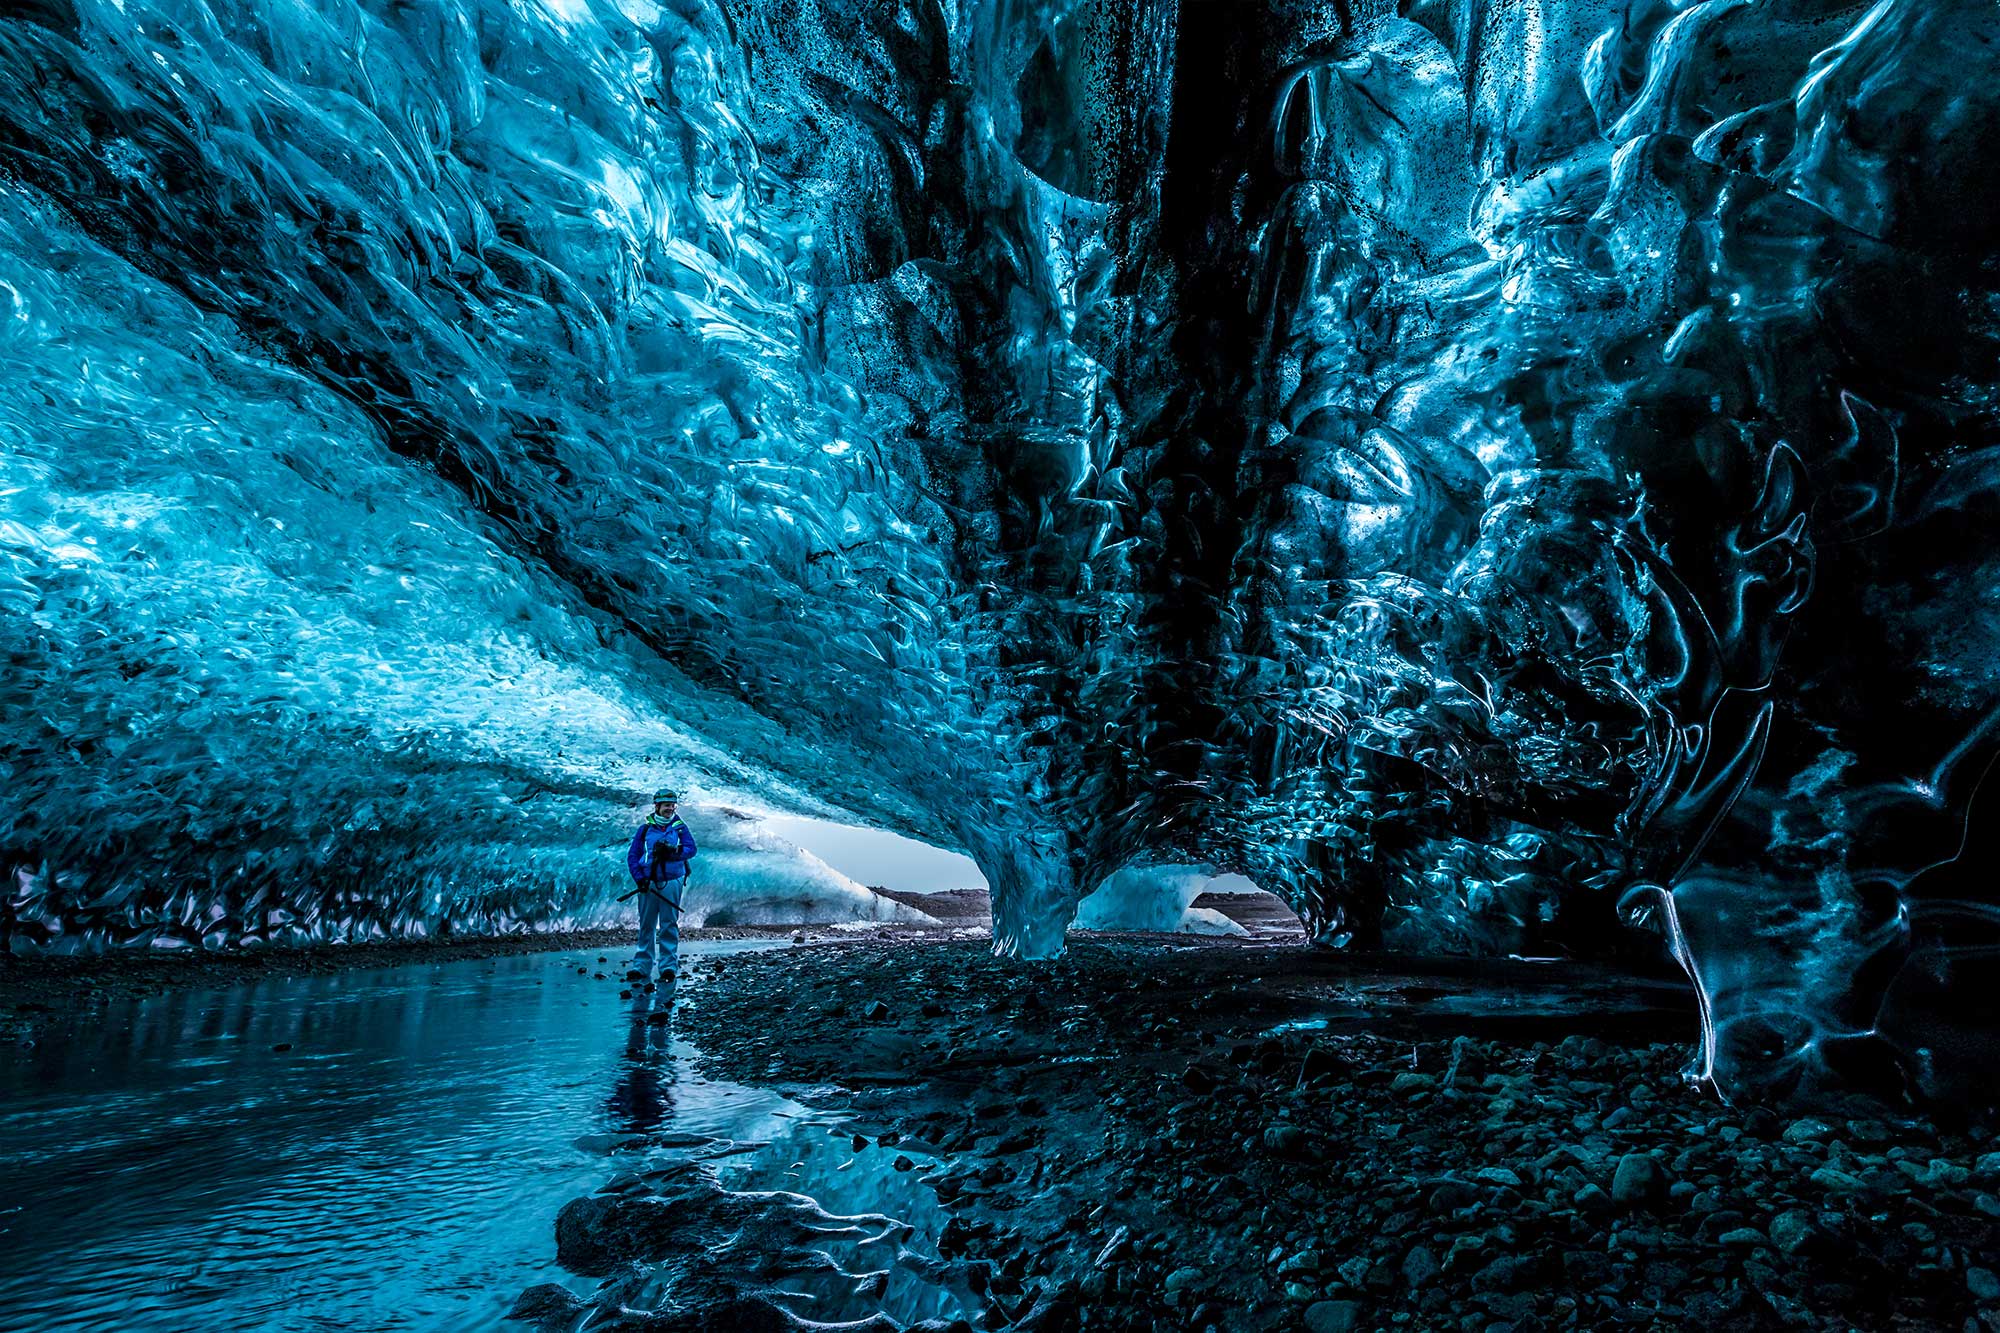 Warm Antarctic cave hiding a secret life